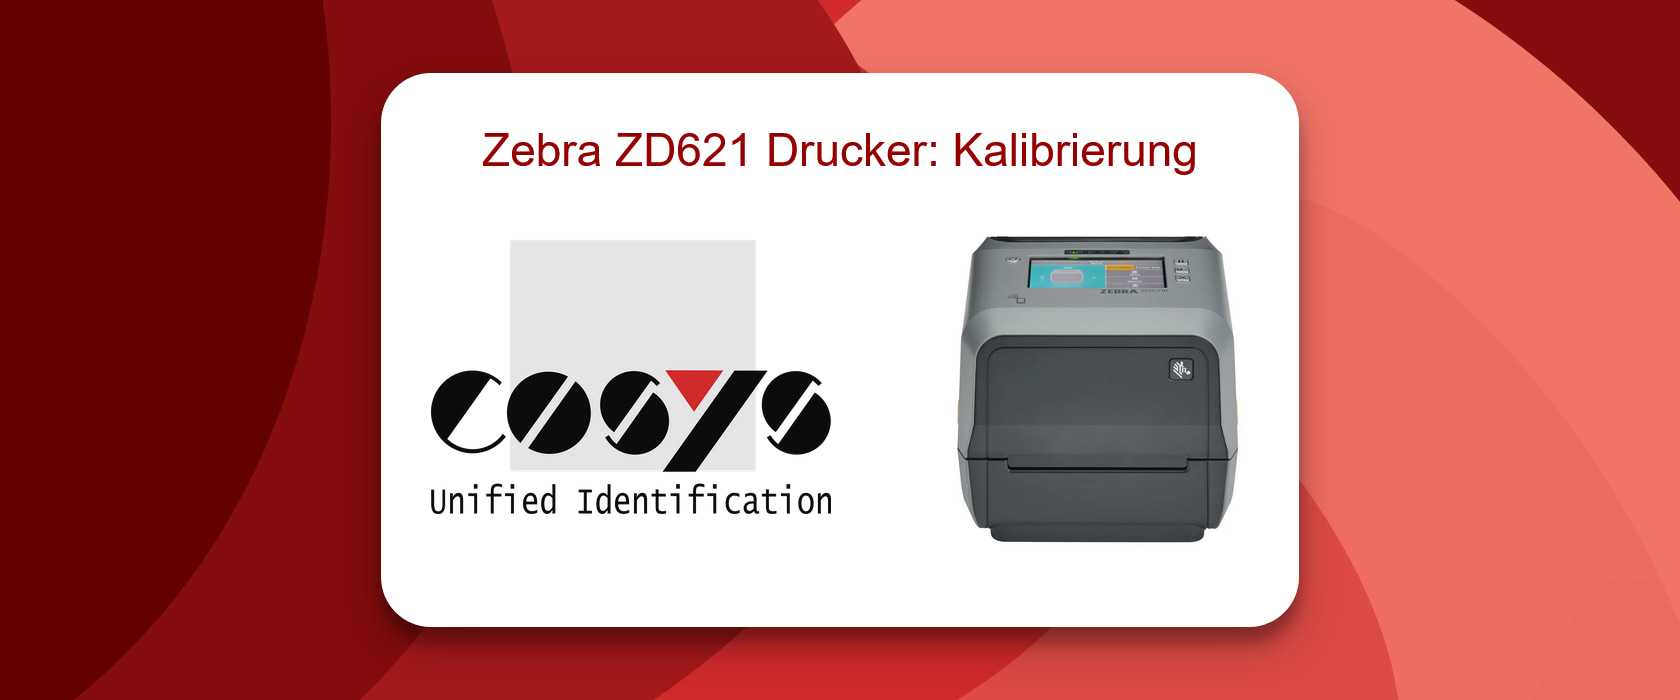 Zebra ZD621 Drucker Kalibrierung